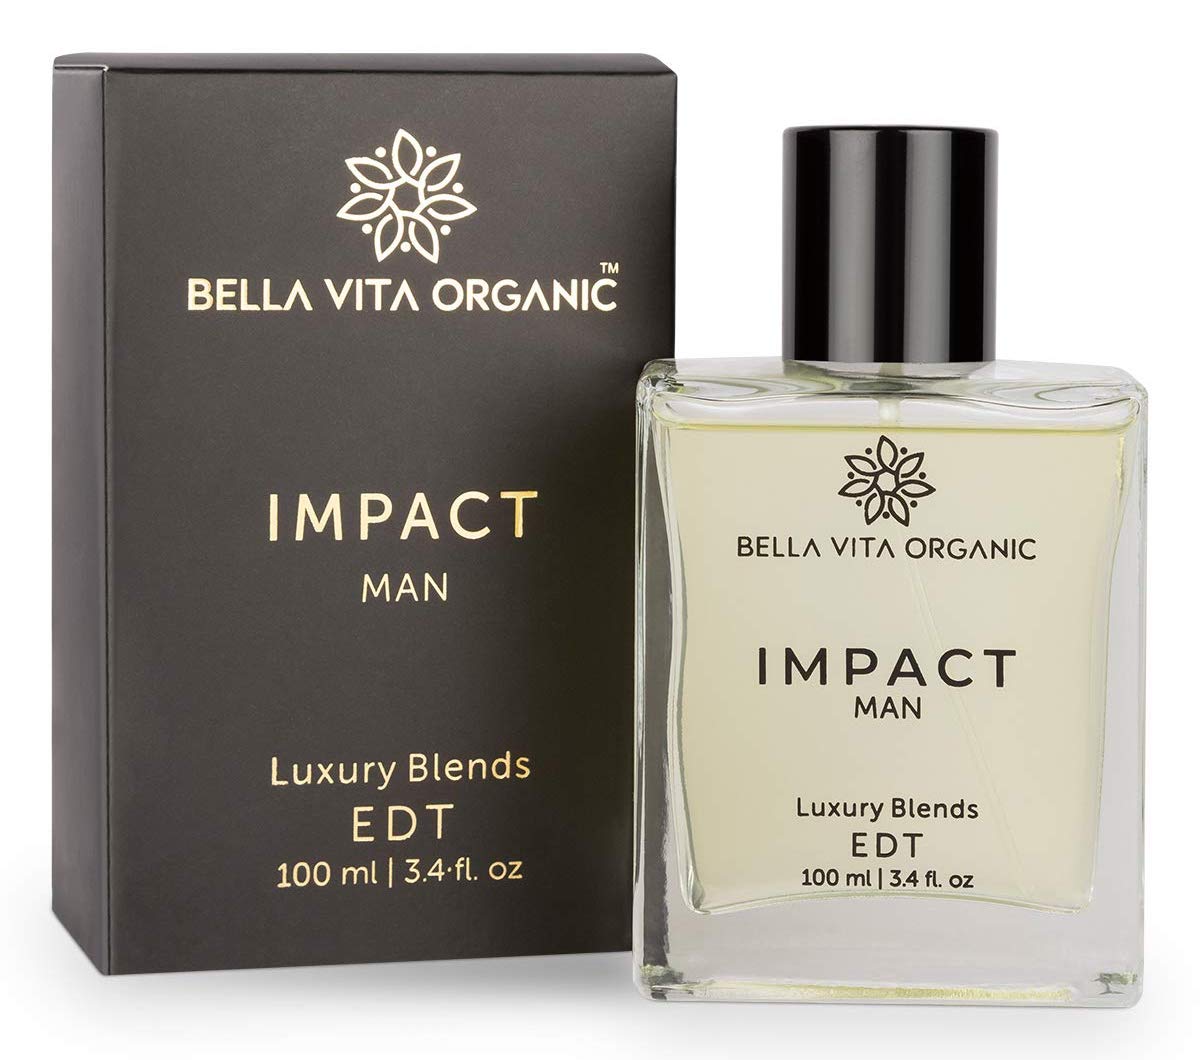 Bella Vita Organic Impact Perfume For Men - The Dashing Man